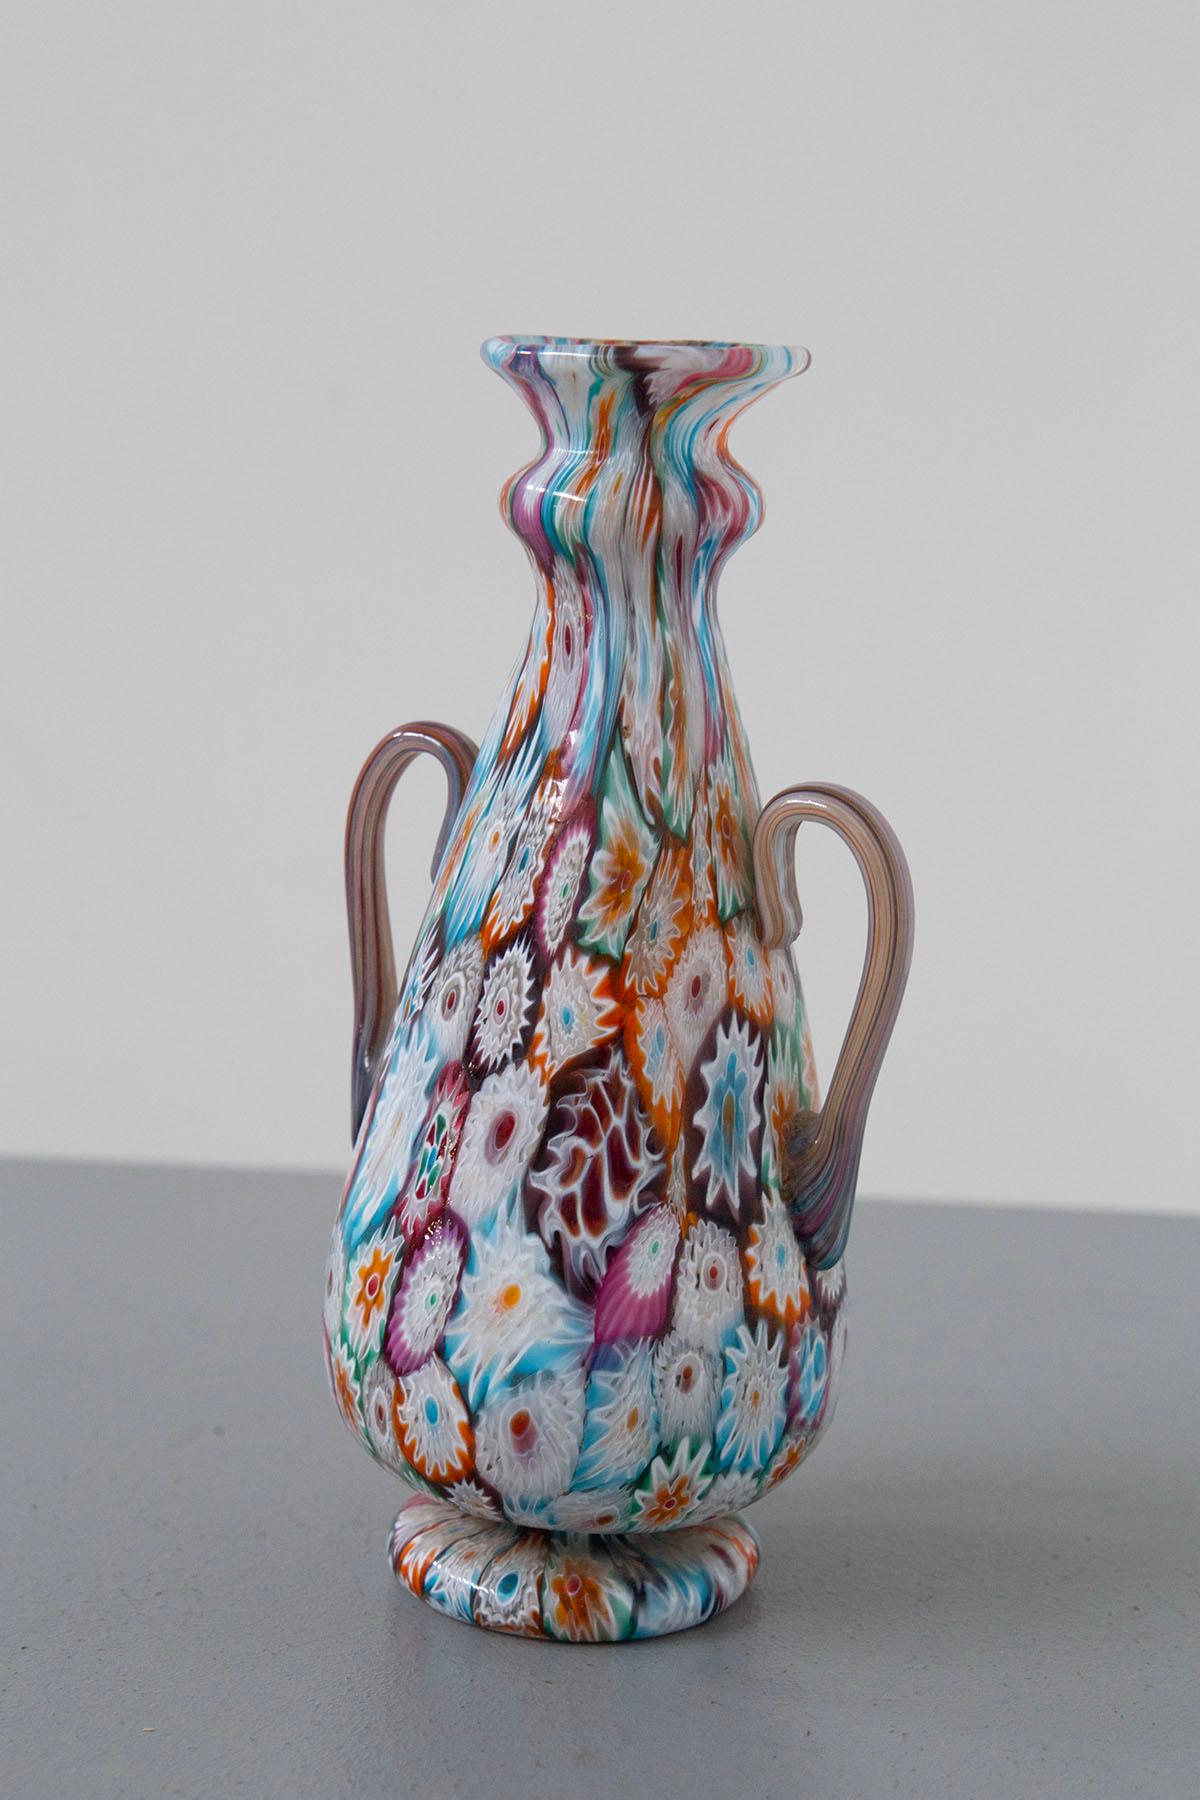 Admirez la grandeur exquise d'un vase décoratif, véritable chef-d'œuvre, né de la tradition artistique du soufflage du verre à Murano. Cette magnifique création est ornée d'une mosaïque artisanale de mille fleurs, appelée 